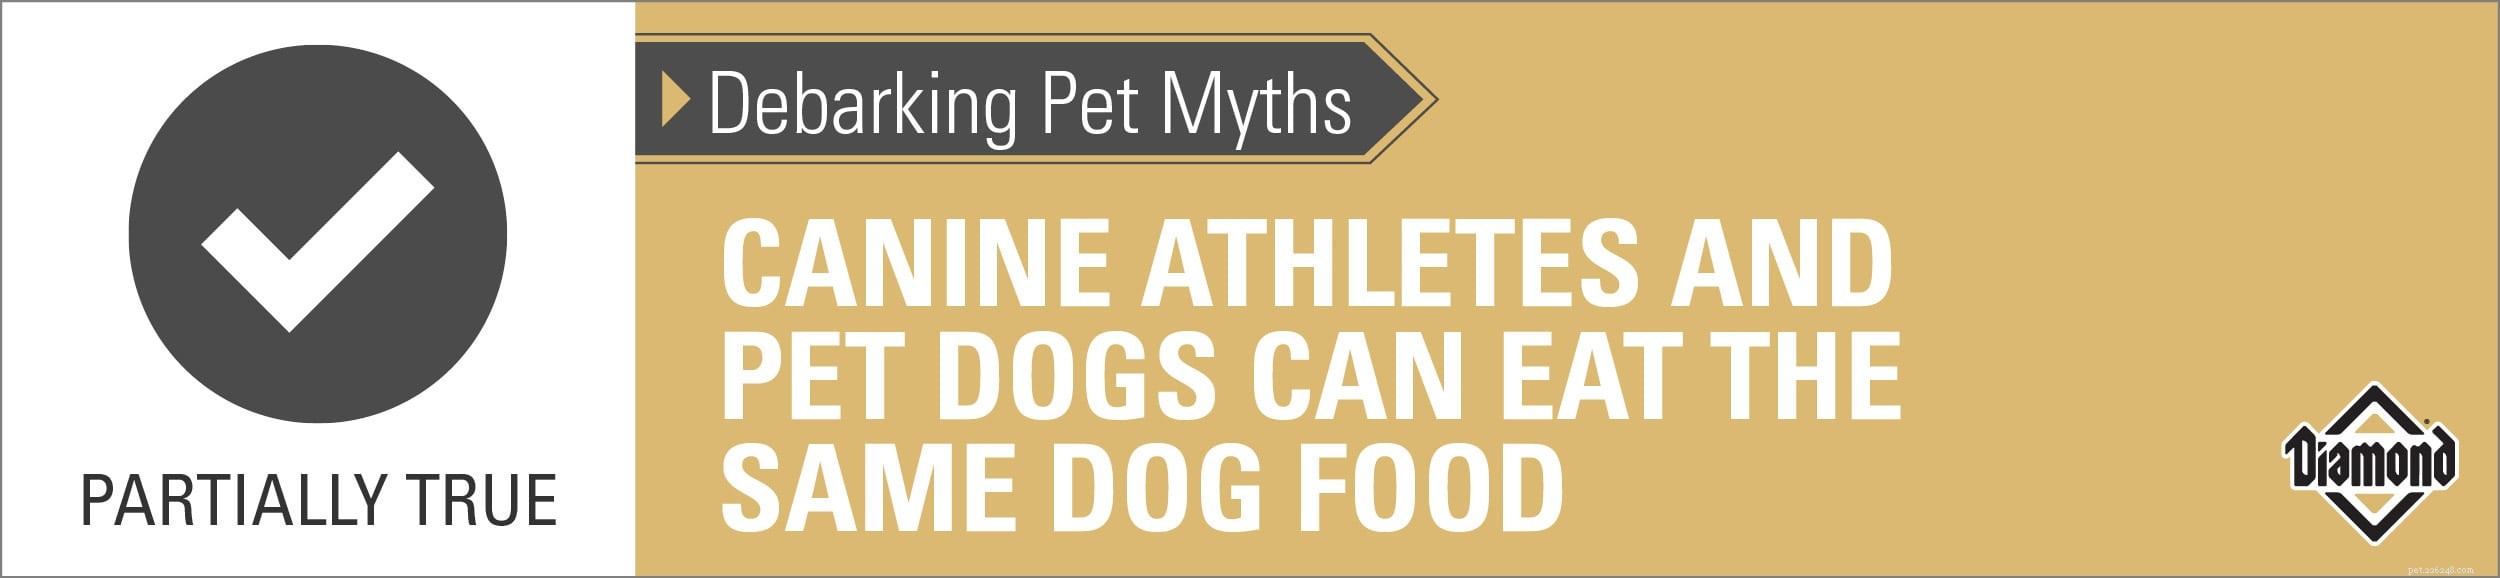 Mýty o odkorňování zvířat:psí sportovci a psi v zájmovém chovu mohou jíst stejné krmivo pro psy